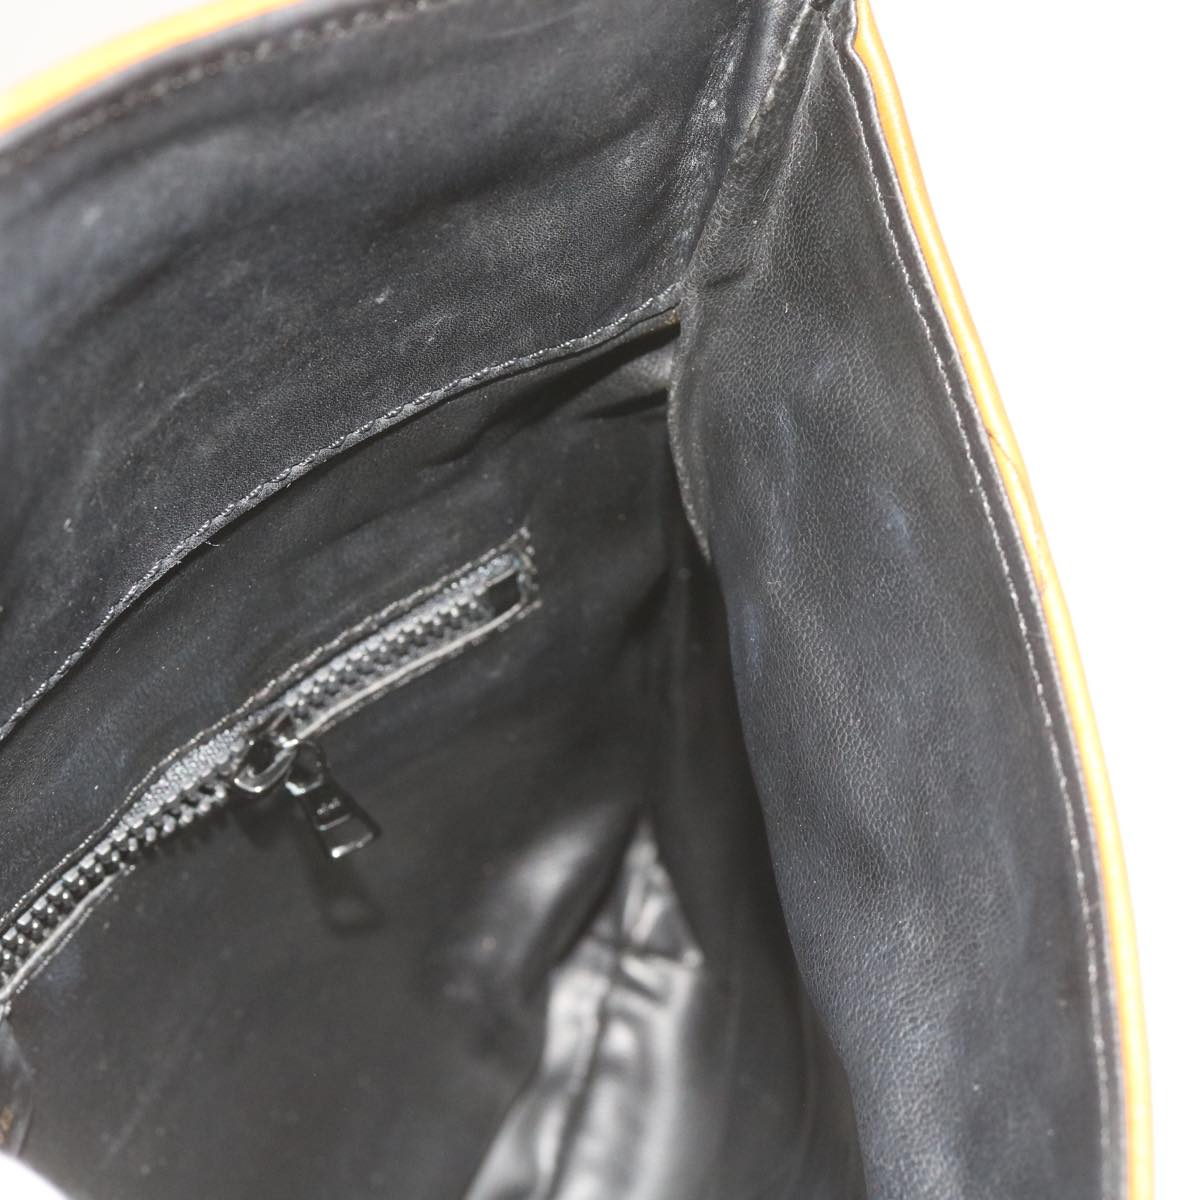 CELINE Shoulder Bag Leather Black Auth am5325